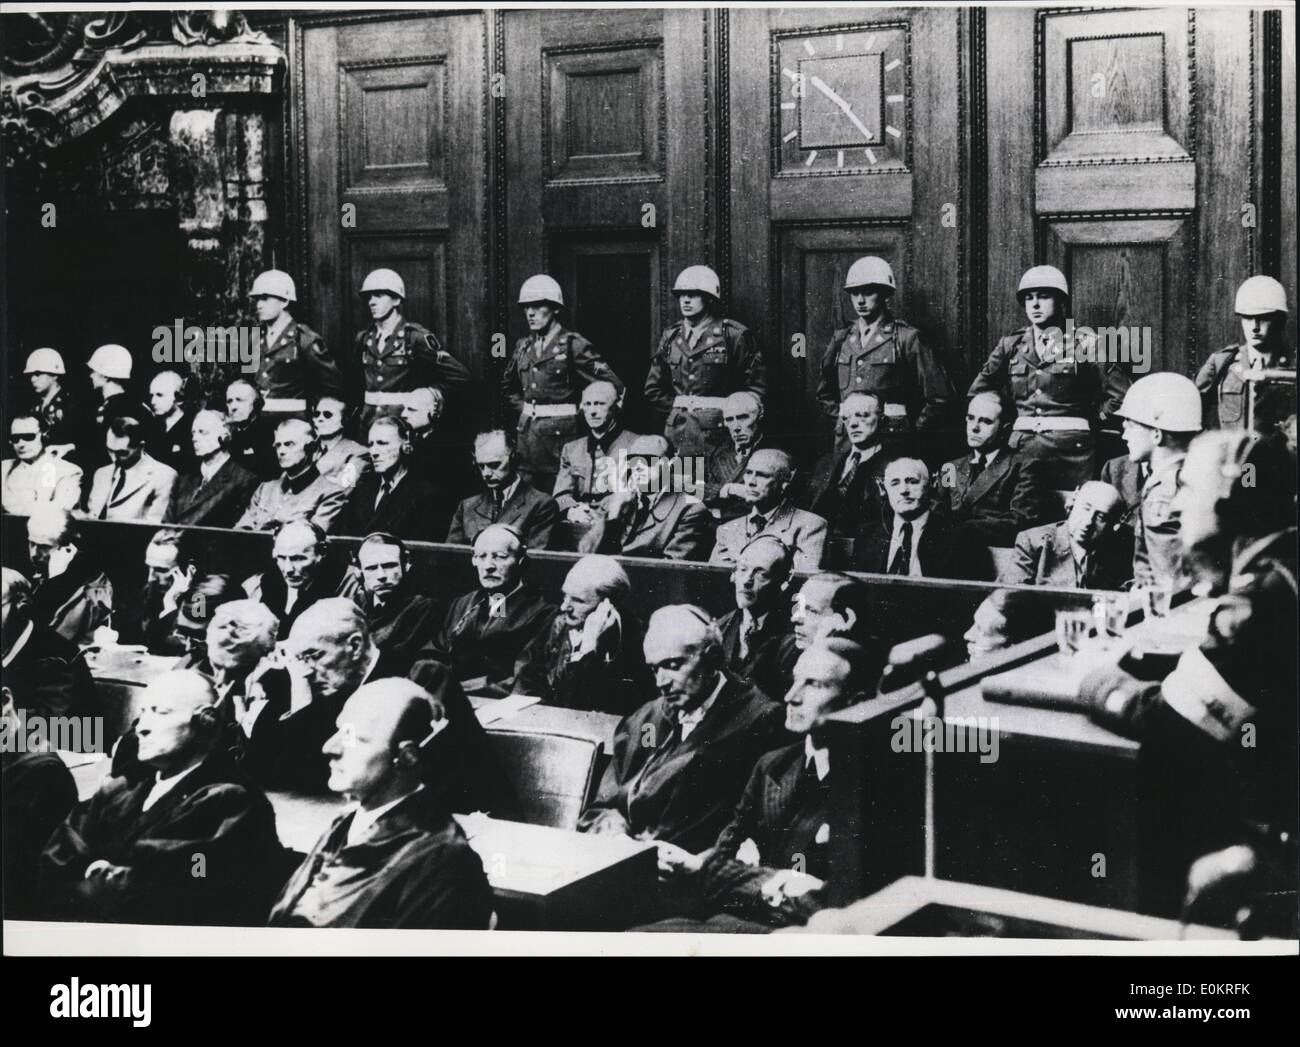 10 octobre 1946 - prononcer des jugements au procès de Nuremberg : il y a 30 ans, le 1er octobre 1946, les Jugements de Nuremberg le procès criminel de guerre n'a été annoncée. À ce plus grand procès de l'histoire, les personnes suivantes ont été condamnés à la pendaison : Ribbentrop, sauckel, katenbrunner, frick frank, stroicher, satB-inquart, Rosenberg, Keitel et Jodi. Ley s'est suicidé avant le jugement, goring après ; Bormann a été condamnée à mort en absence Banque D'Images